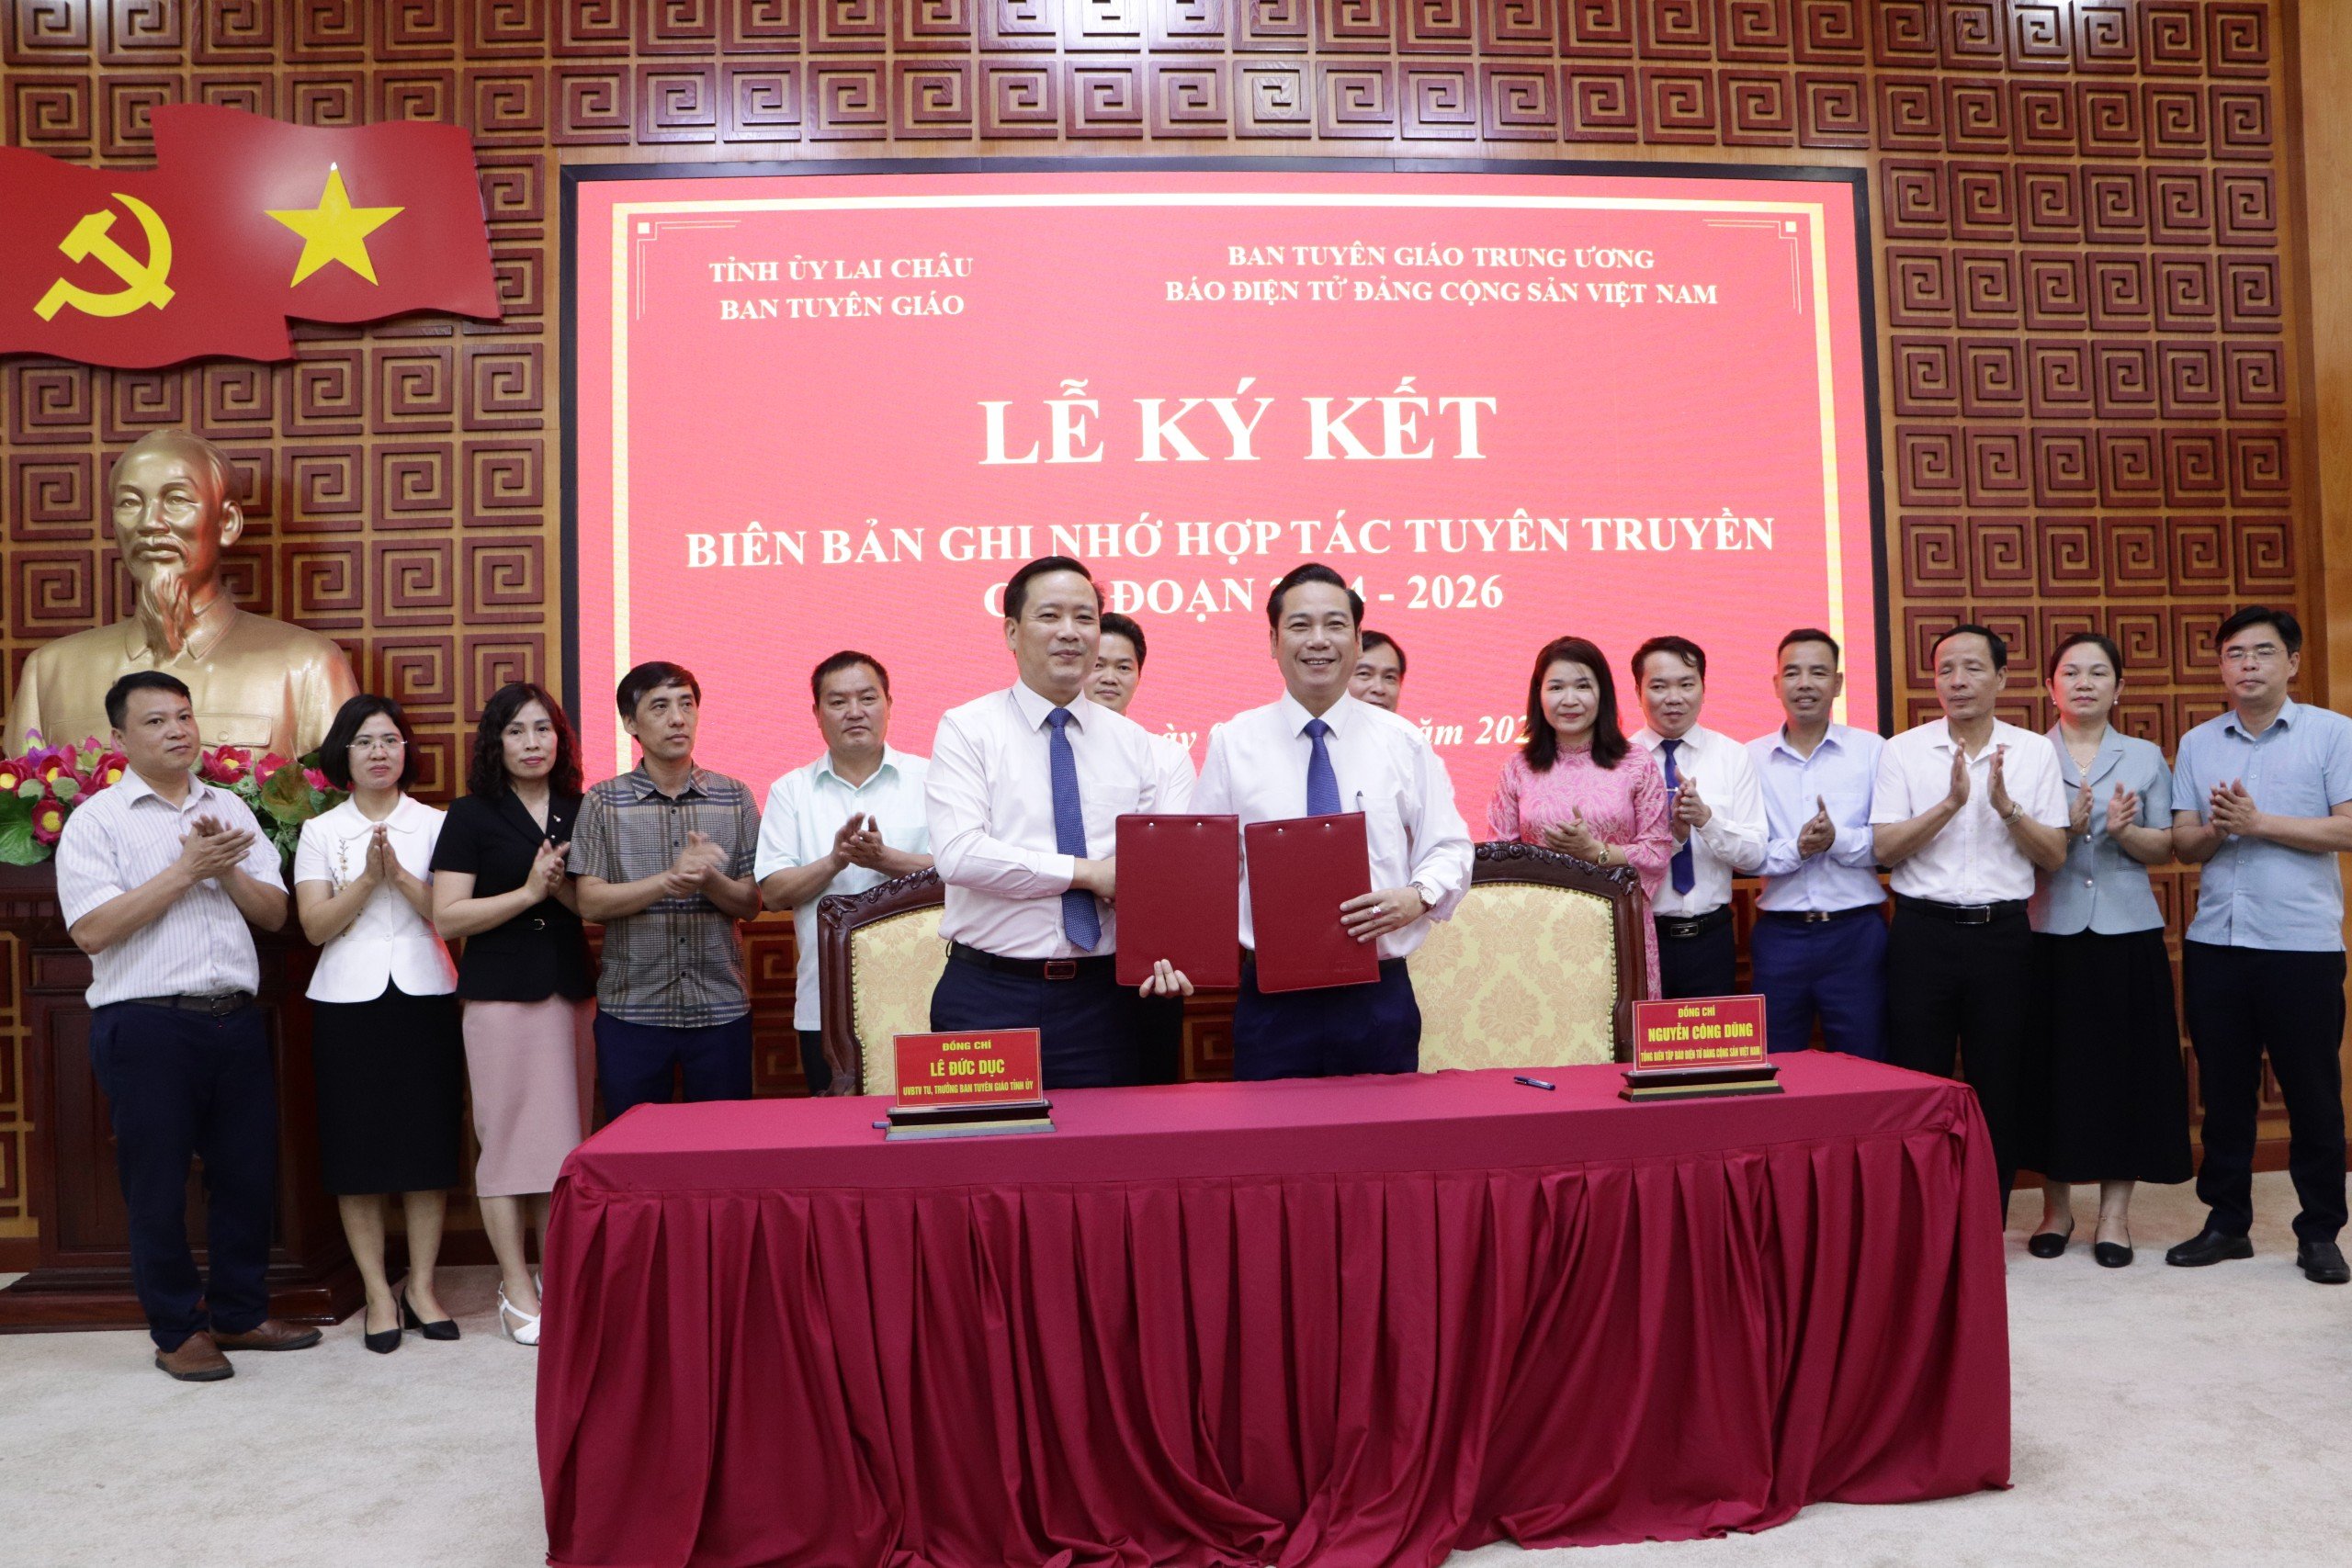 Đồng chí Trưởng Ban Tuyên giáo Tỉnh uỷ Lai Châu và Tổng Biên tập Báo điện tử Đảng Cộng sản Việt Nam ký kết biên bản ghi nhớ Hợp tác phối hợp tuyên truyền